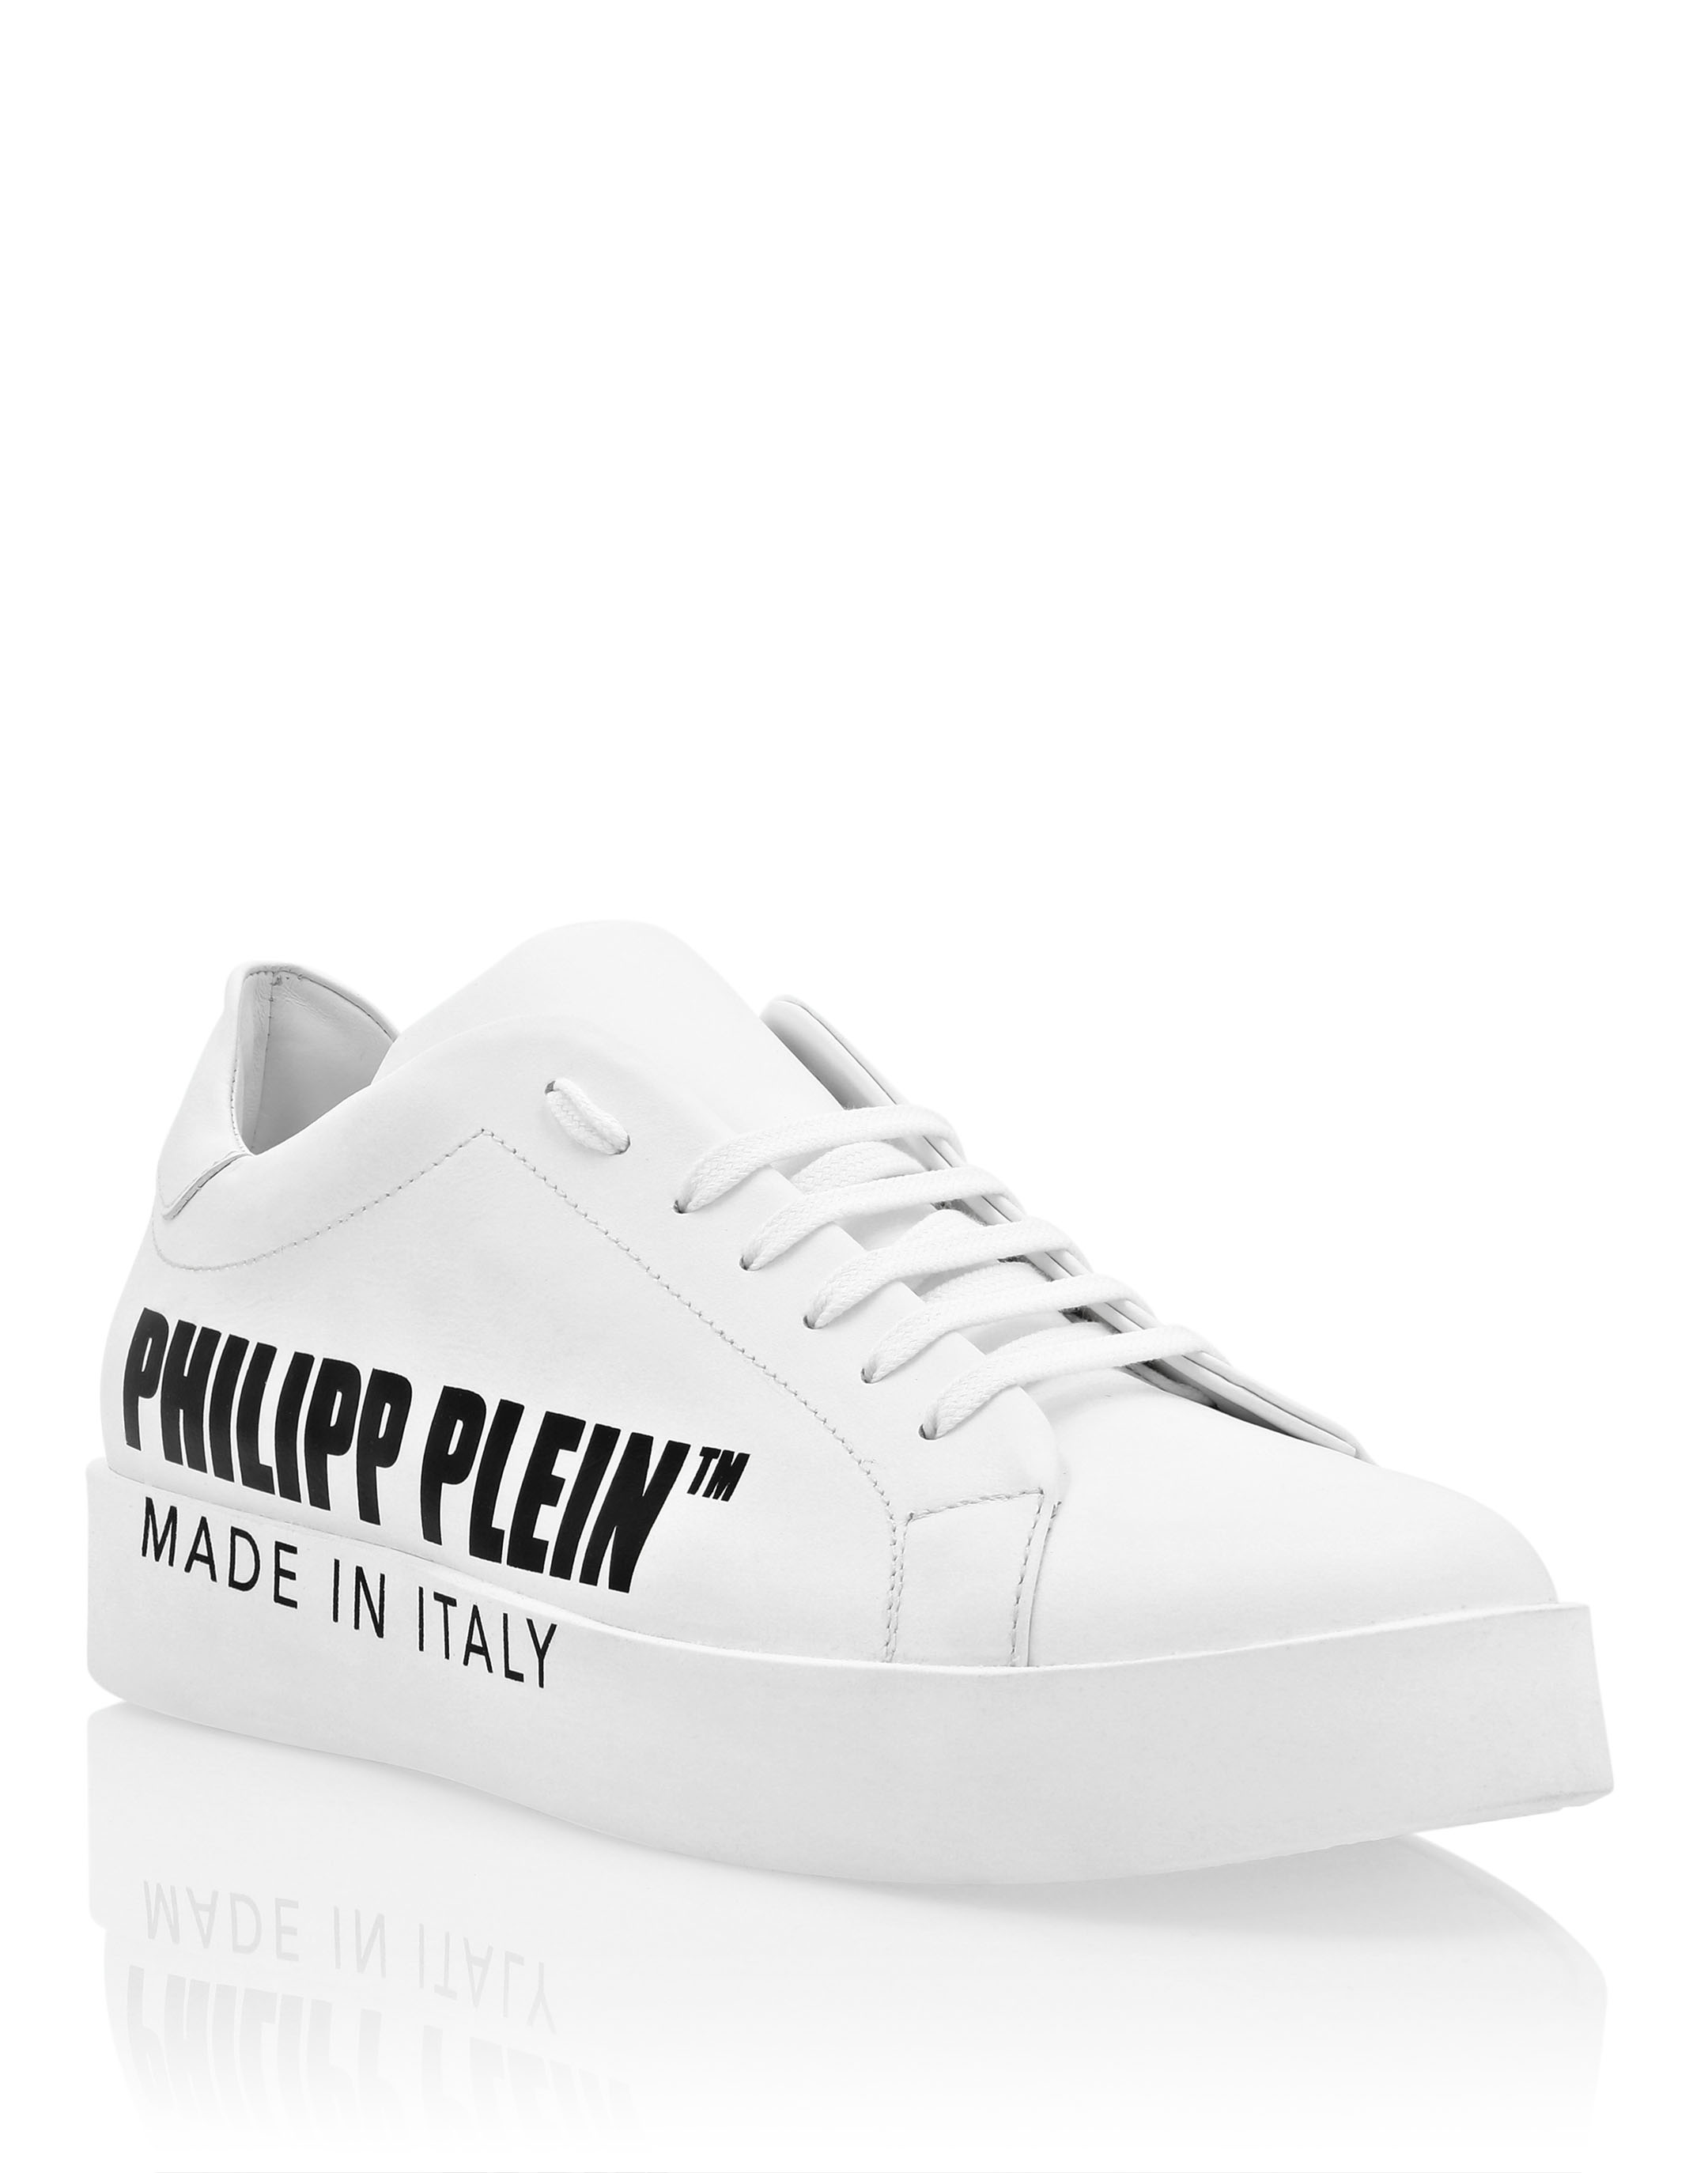 Humanistisch Lionel Green Street Onderzoek Leather Lo-Top Sneakers Philipp Plein TM | Philipp Plein Outlet